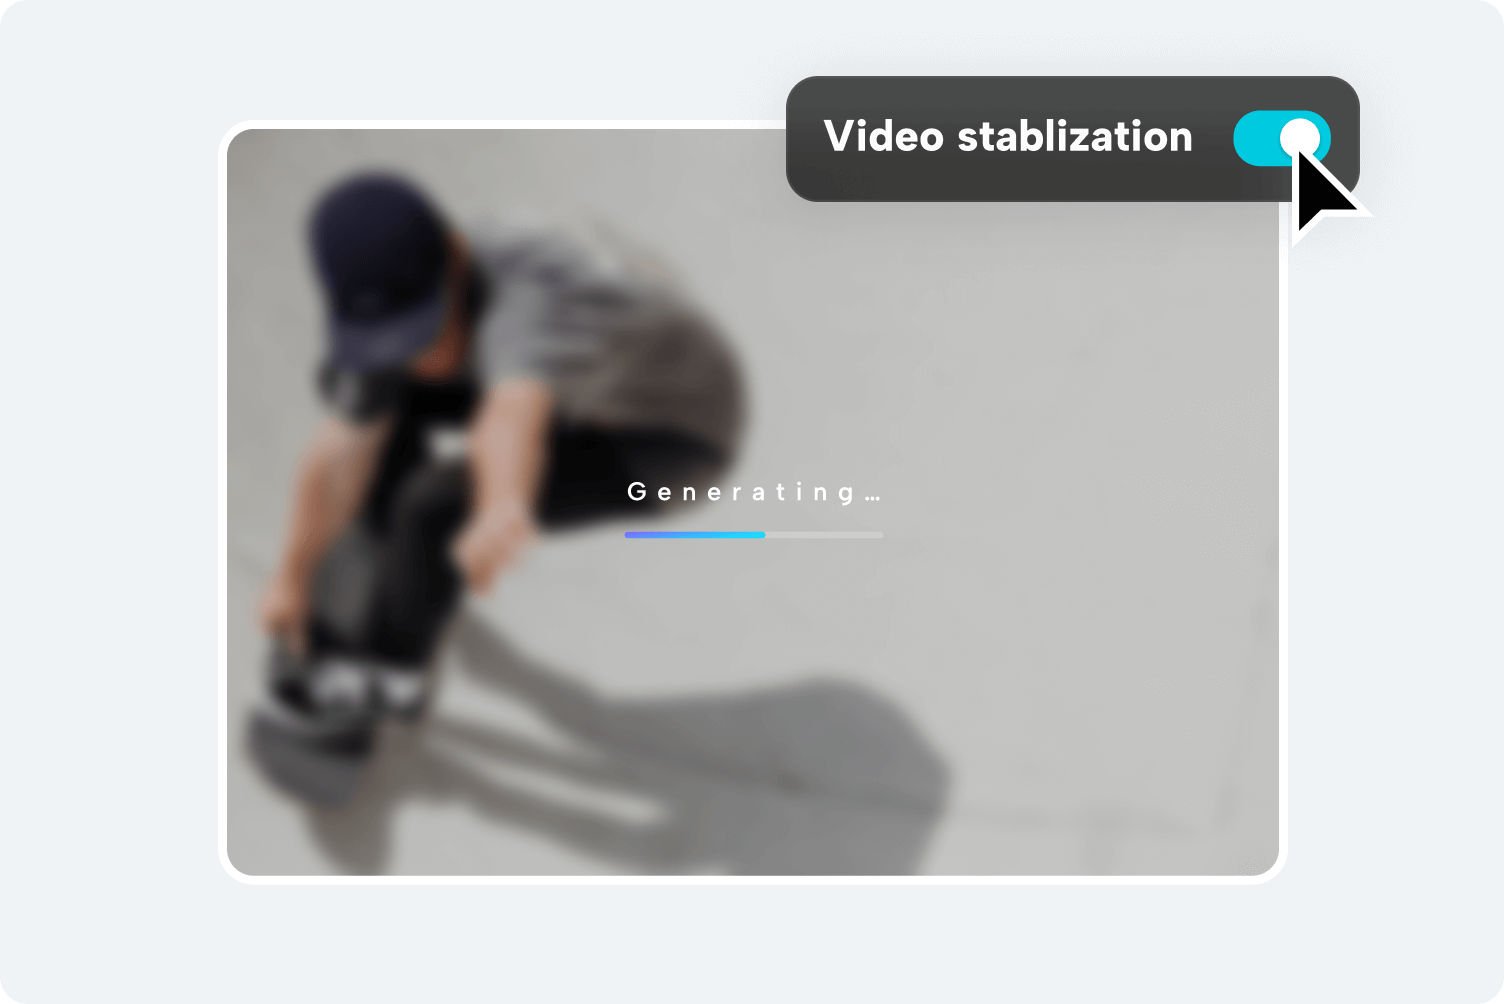 Stablize video online